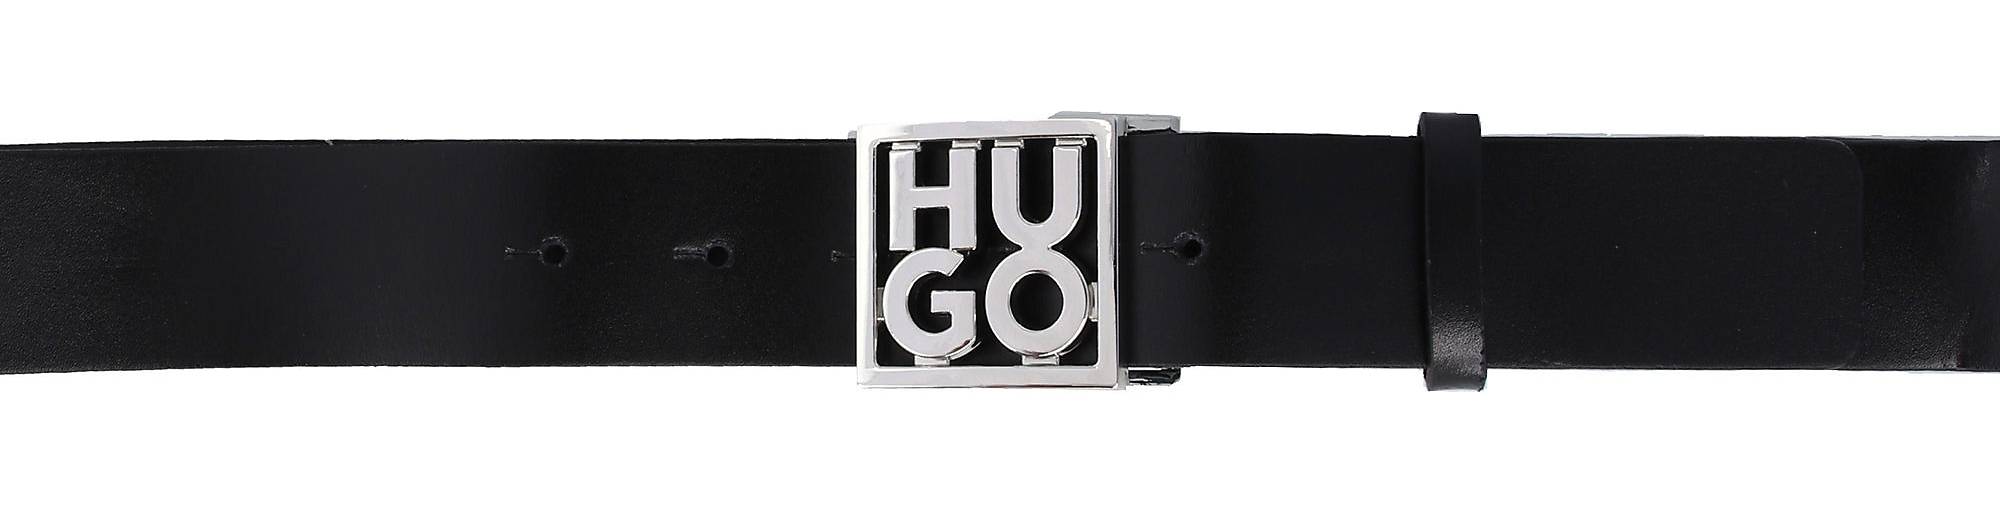 HU-GO - Gürtel schwarz 23294001 bestellen in Leder HUGO